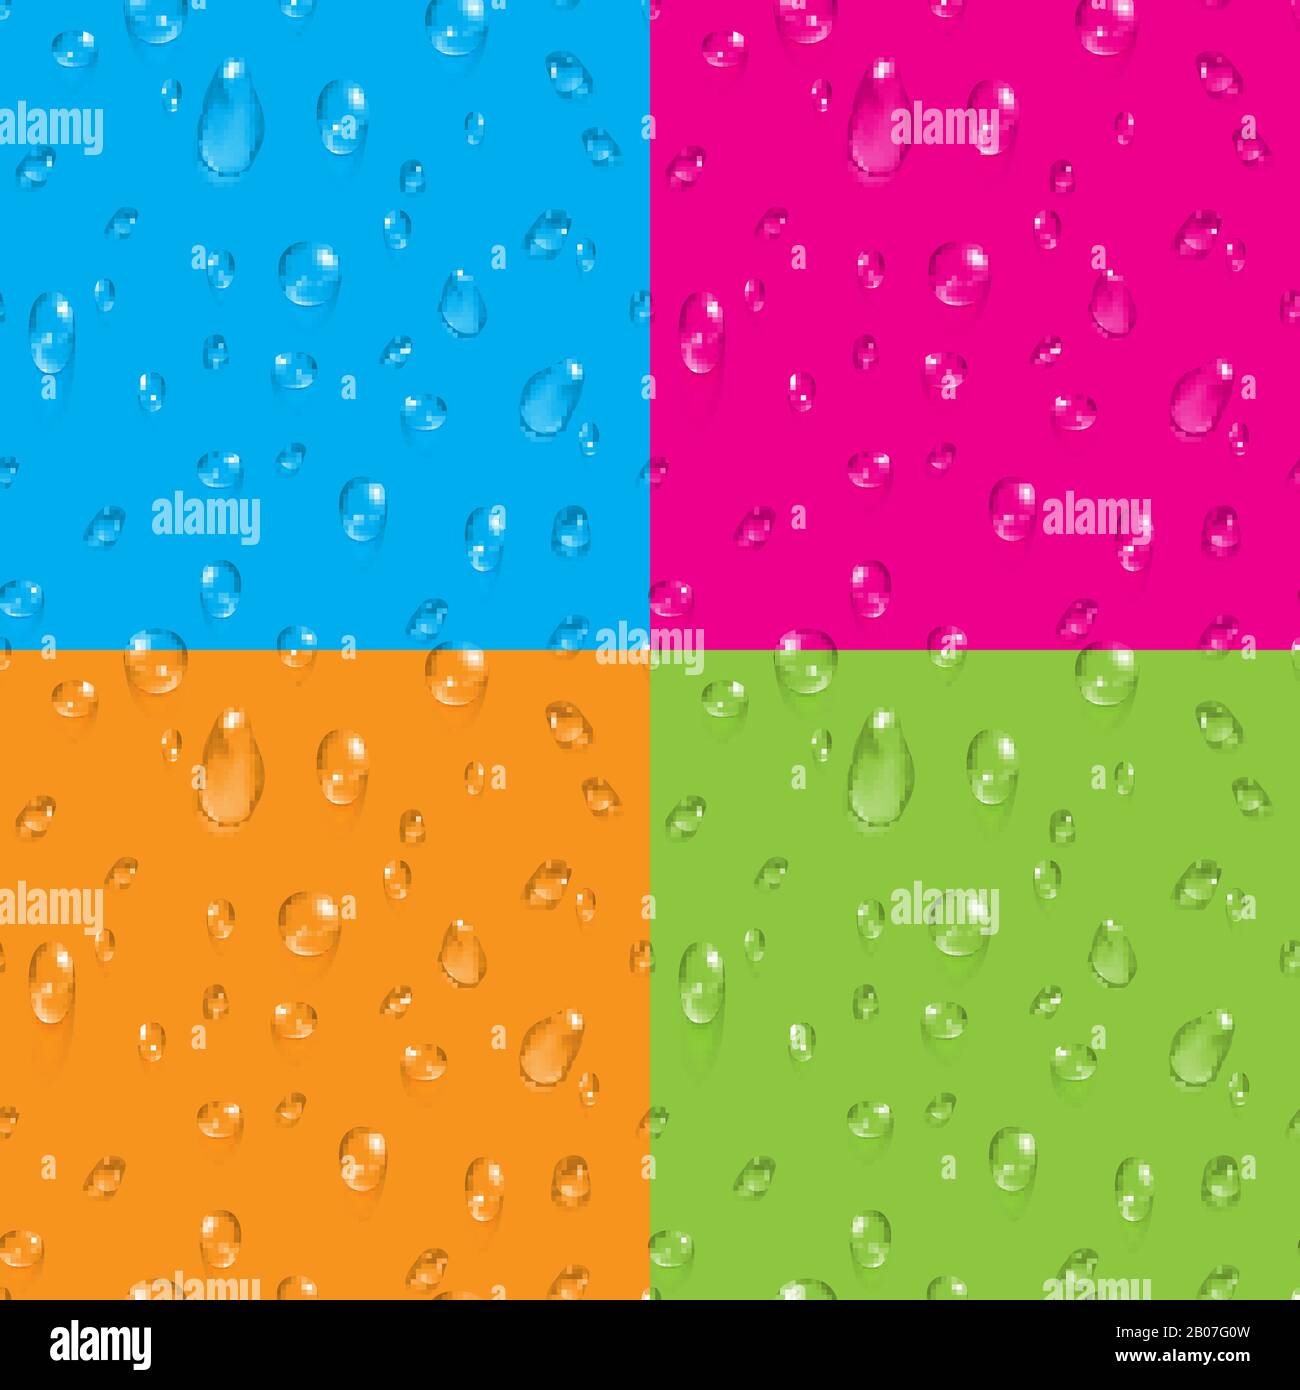 Satz durchsichtiger Wassertropfen auf farbigem Hintergrund Vektor nahtlose Hintergründe Abbildung Stock Vektor